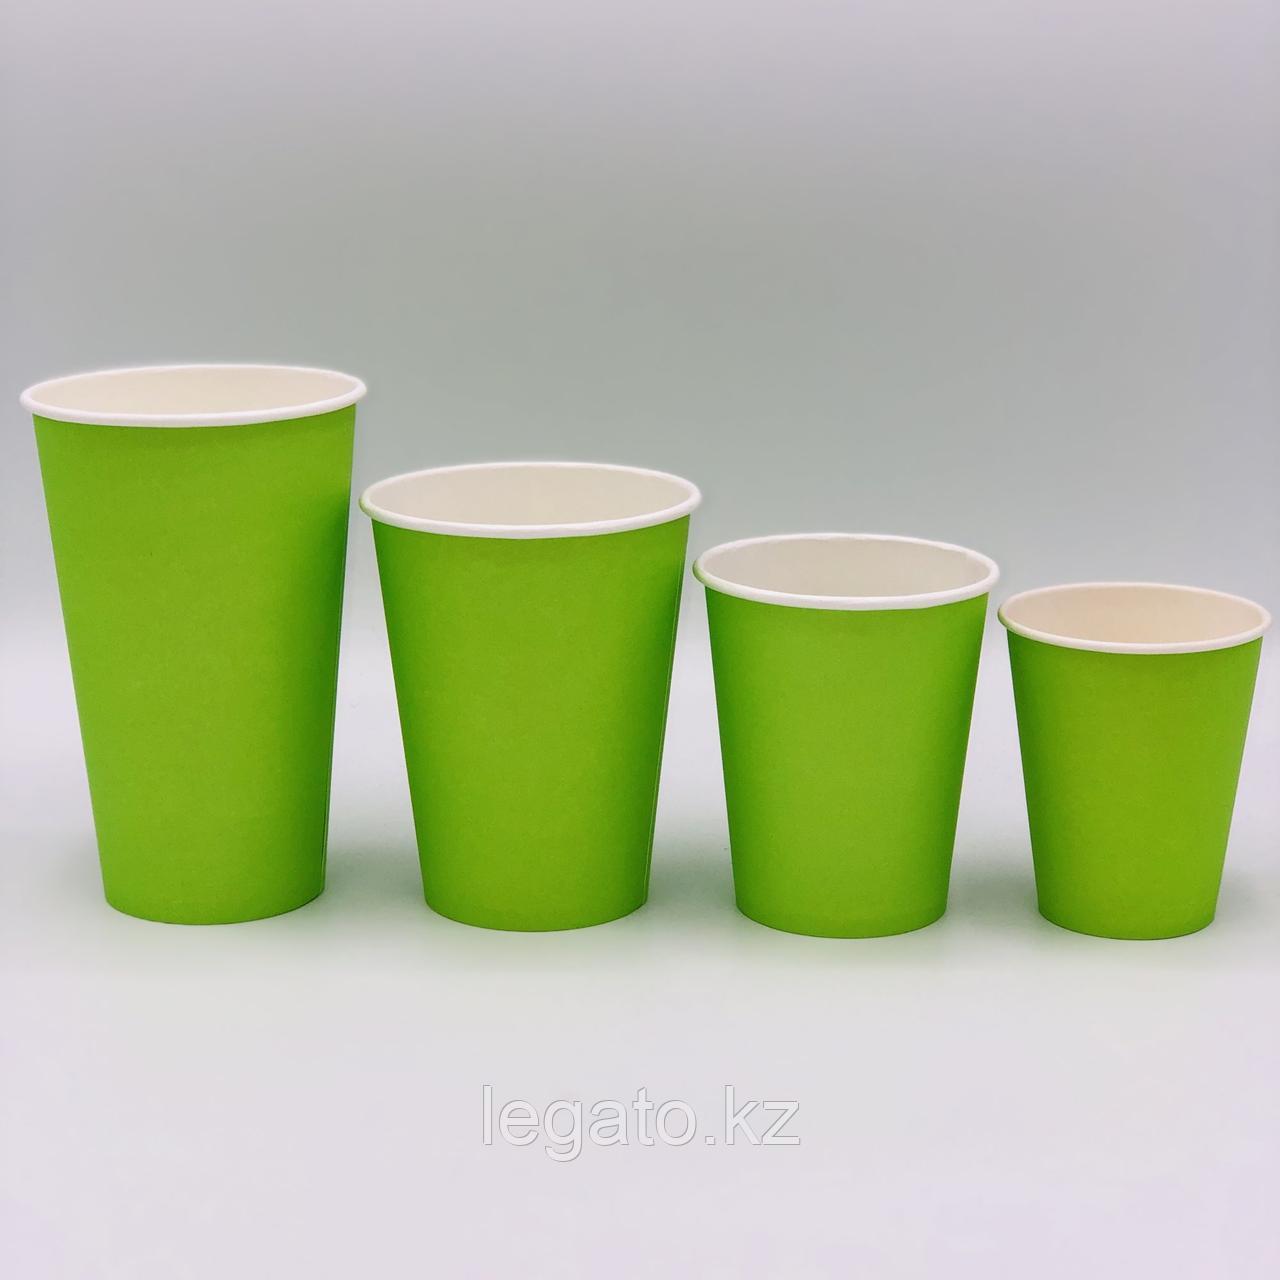 Стакан бумажный для горячих напитков "Зеленый" 250 мл 50шт/уп 1000 шт/кор